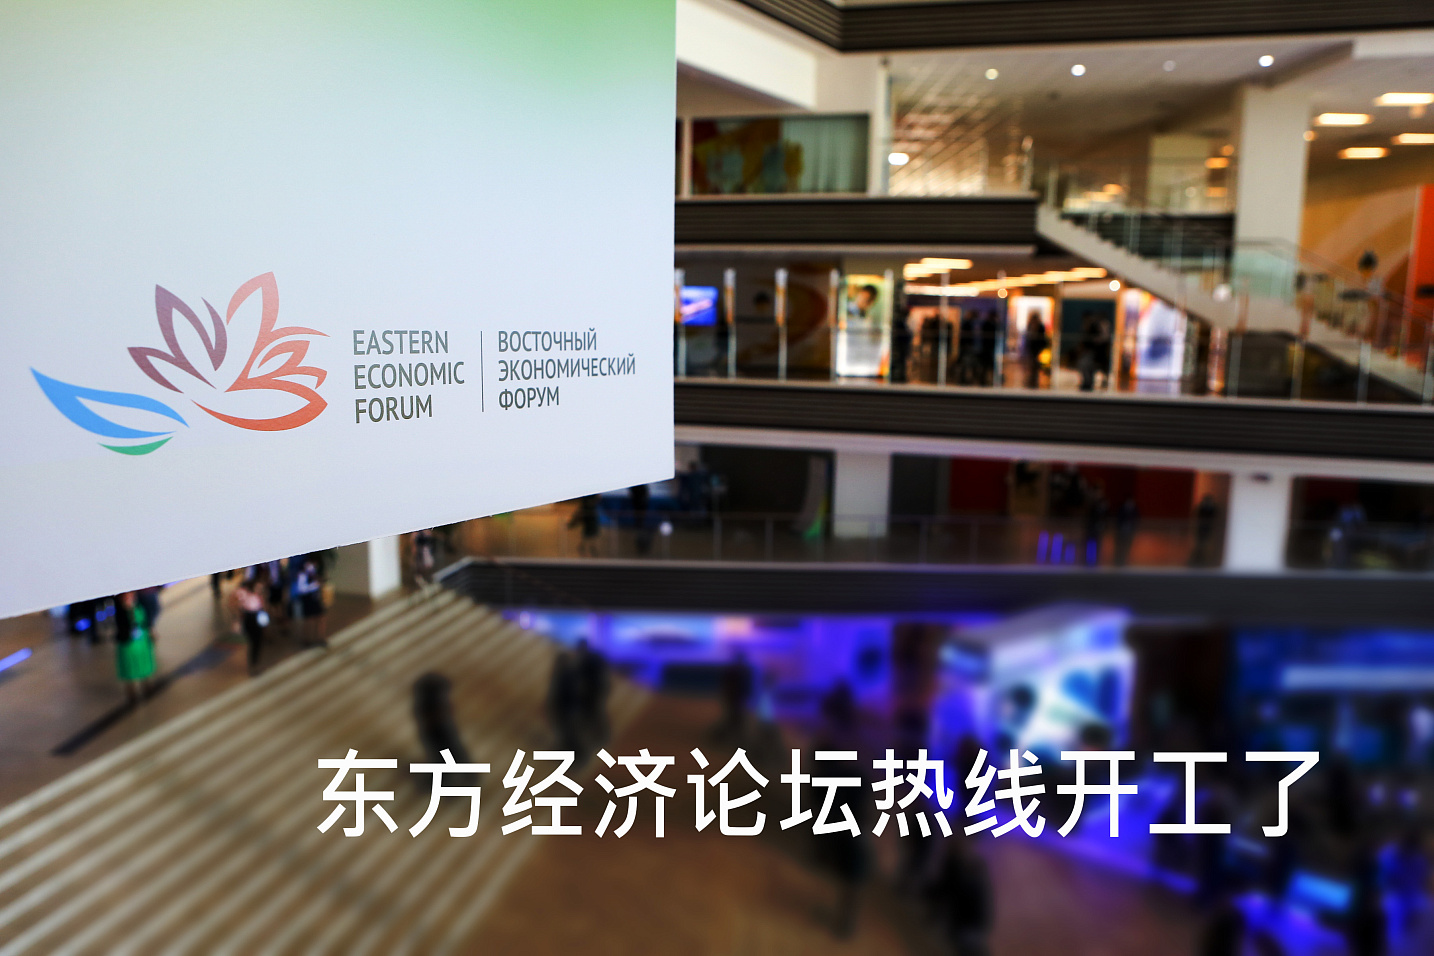 Информационная линия Восточного экономического форума начала принимать обращения на китайском языке